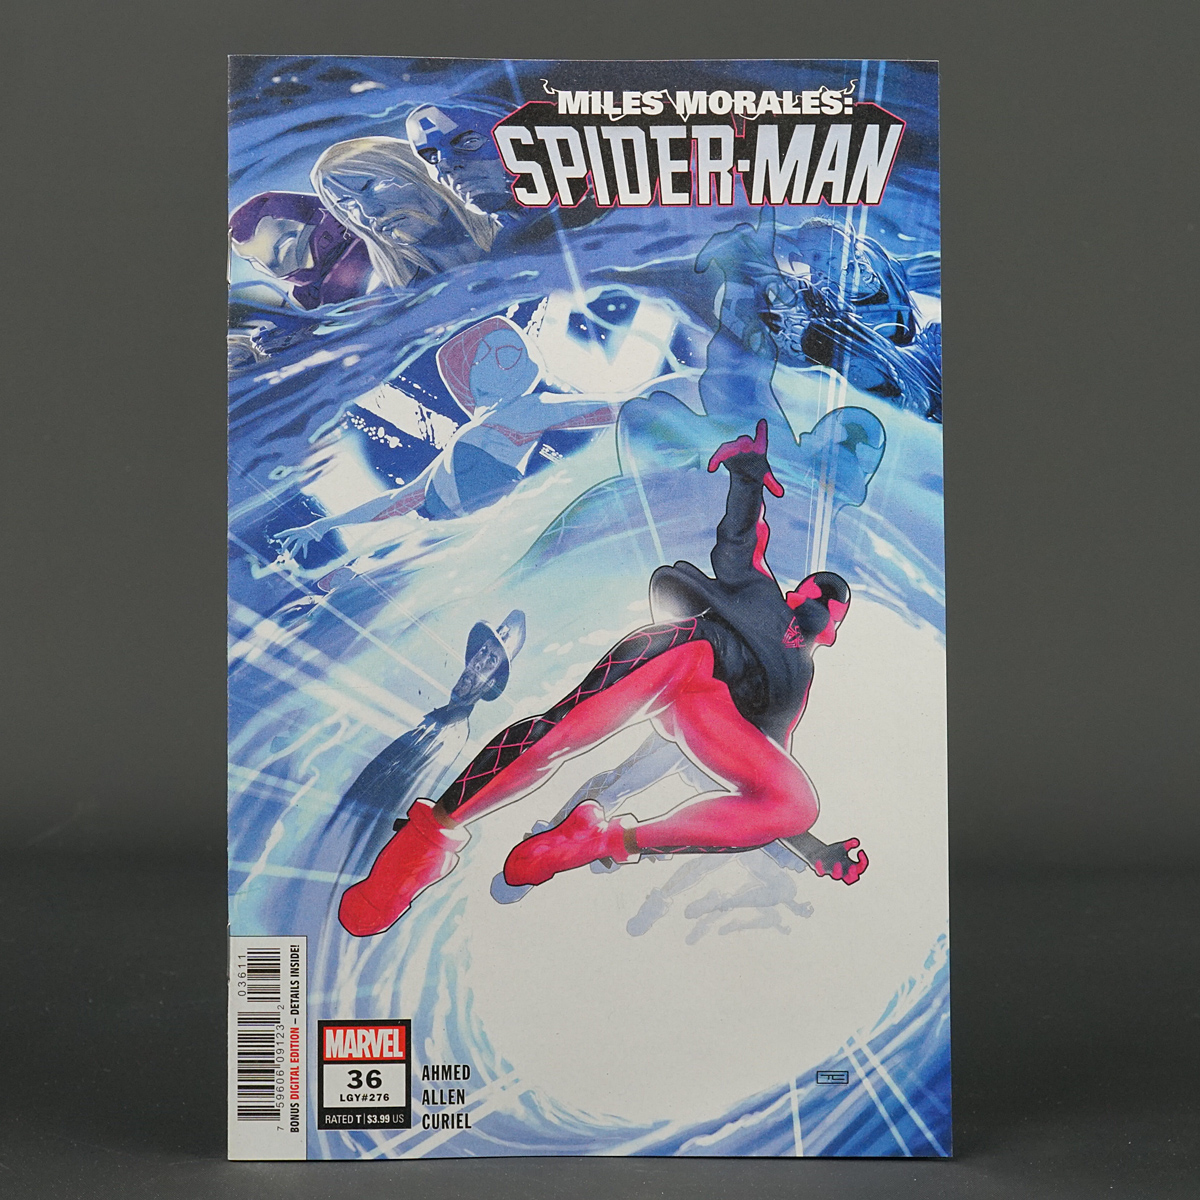 MILES MORALES SPIDER-MAN #36 Marvel Comics 2022 JAN220894 (CA) Clarke (W) Ahmed (A) Allen